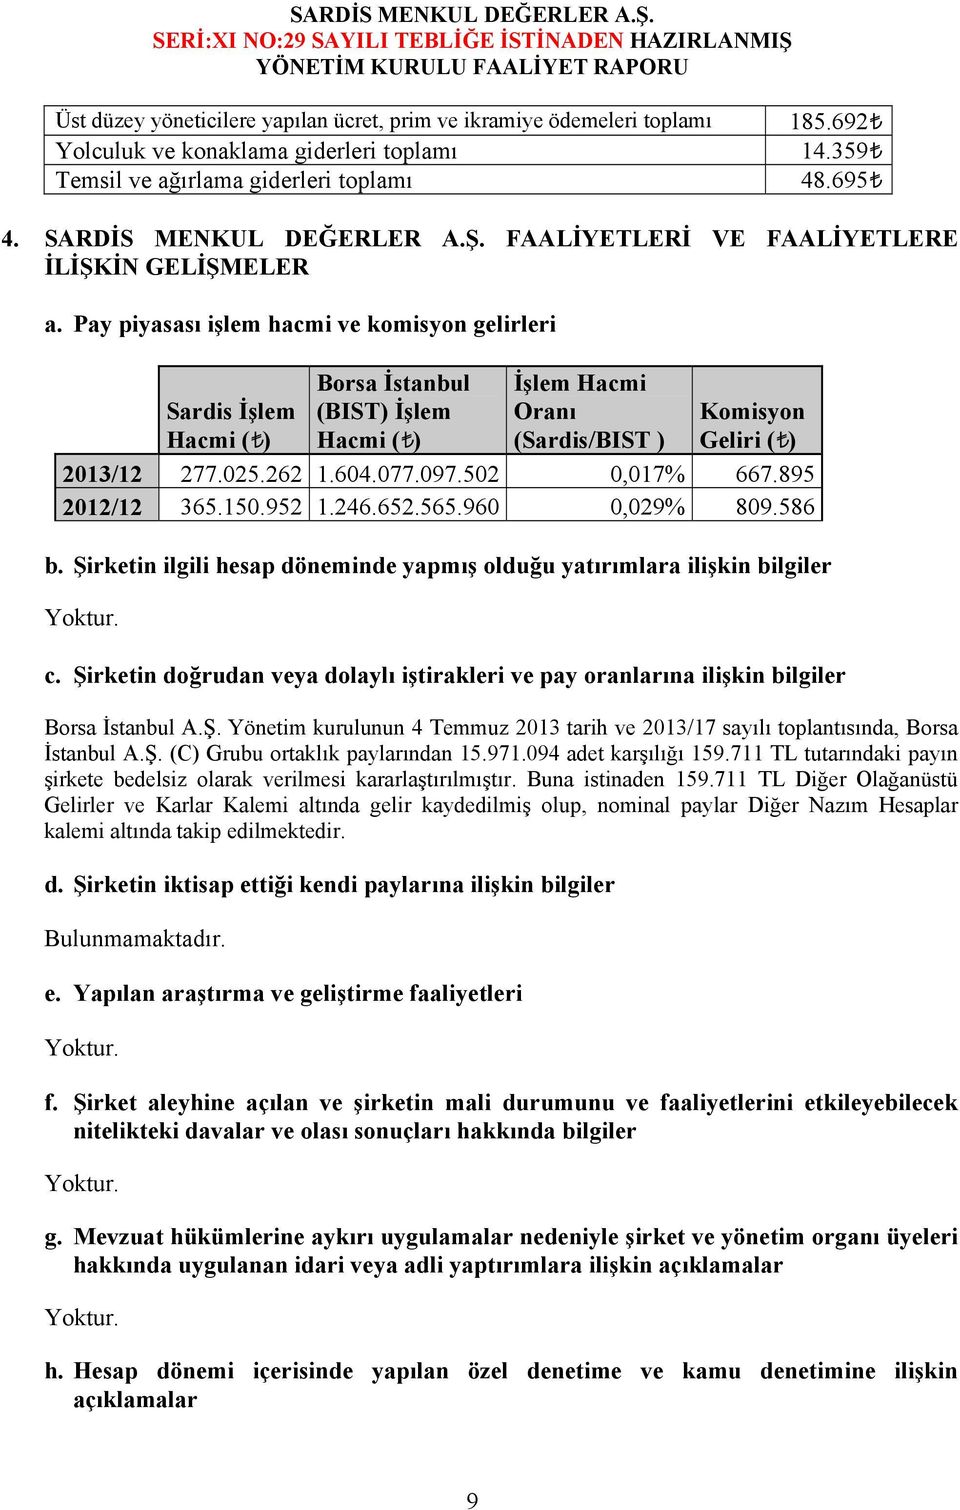 Pay piyasası işlem hacmi ve komisyon gelirleri Sardis İşlem Hacmi ( ) Borsa İstanbul (BIST) İşlem Hacmi ( ) İşlem Hacmi Oranı (Sardis/BIST ) Komisyon Geliri ( ) 2013/12 277.025.262 1.604.077.097.